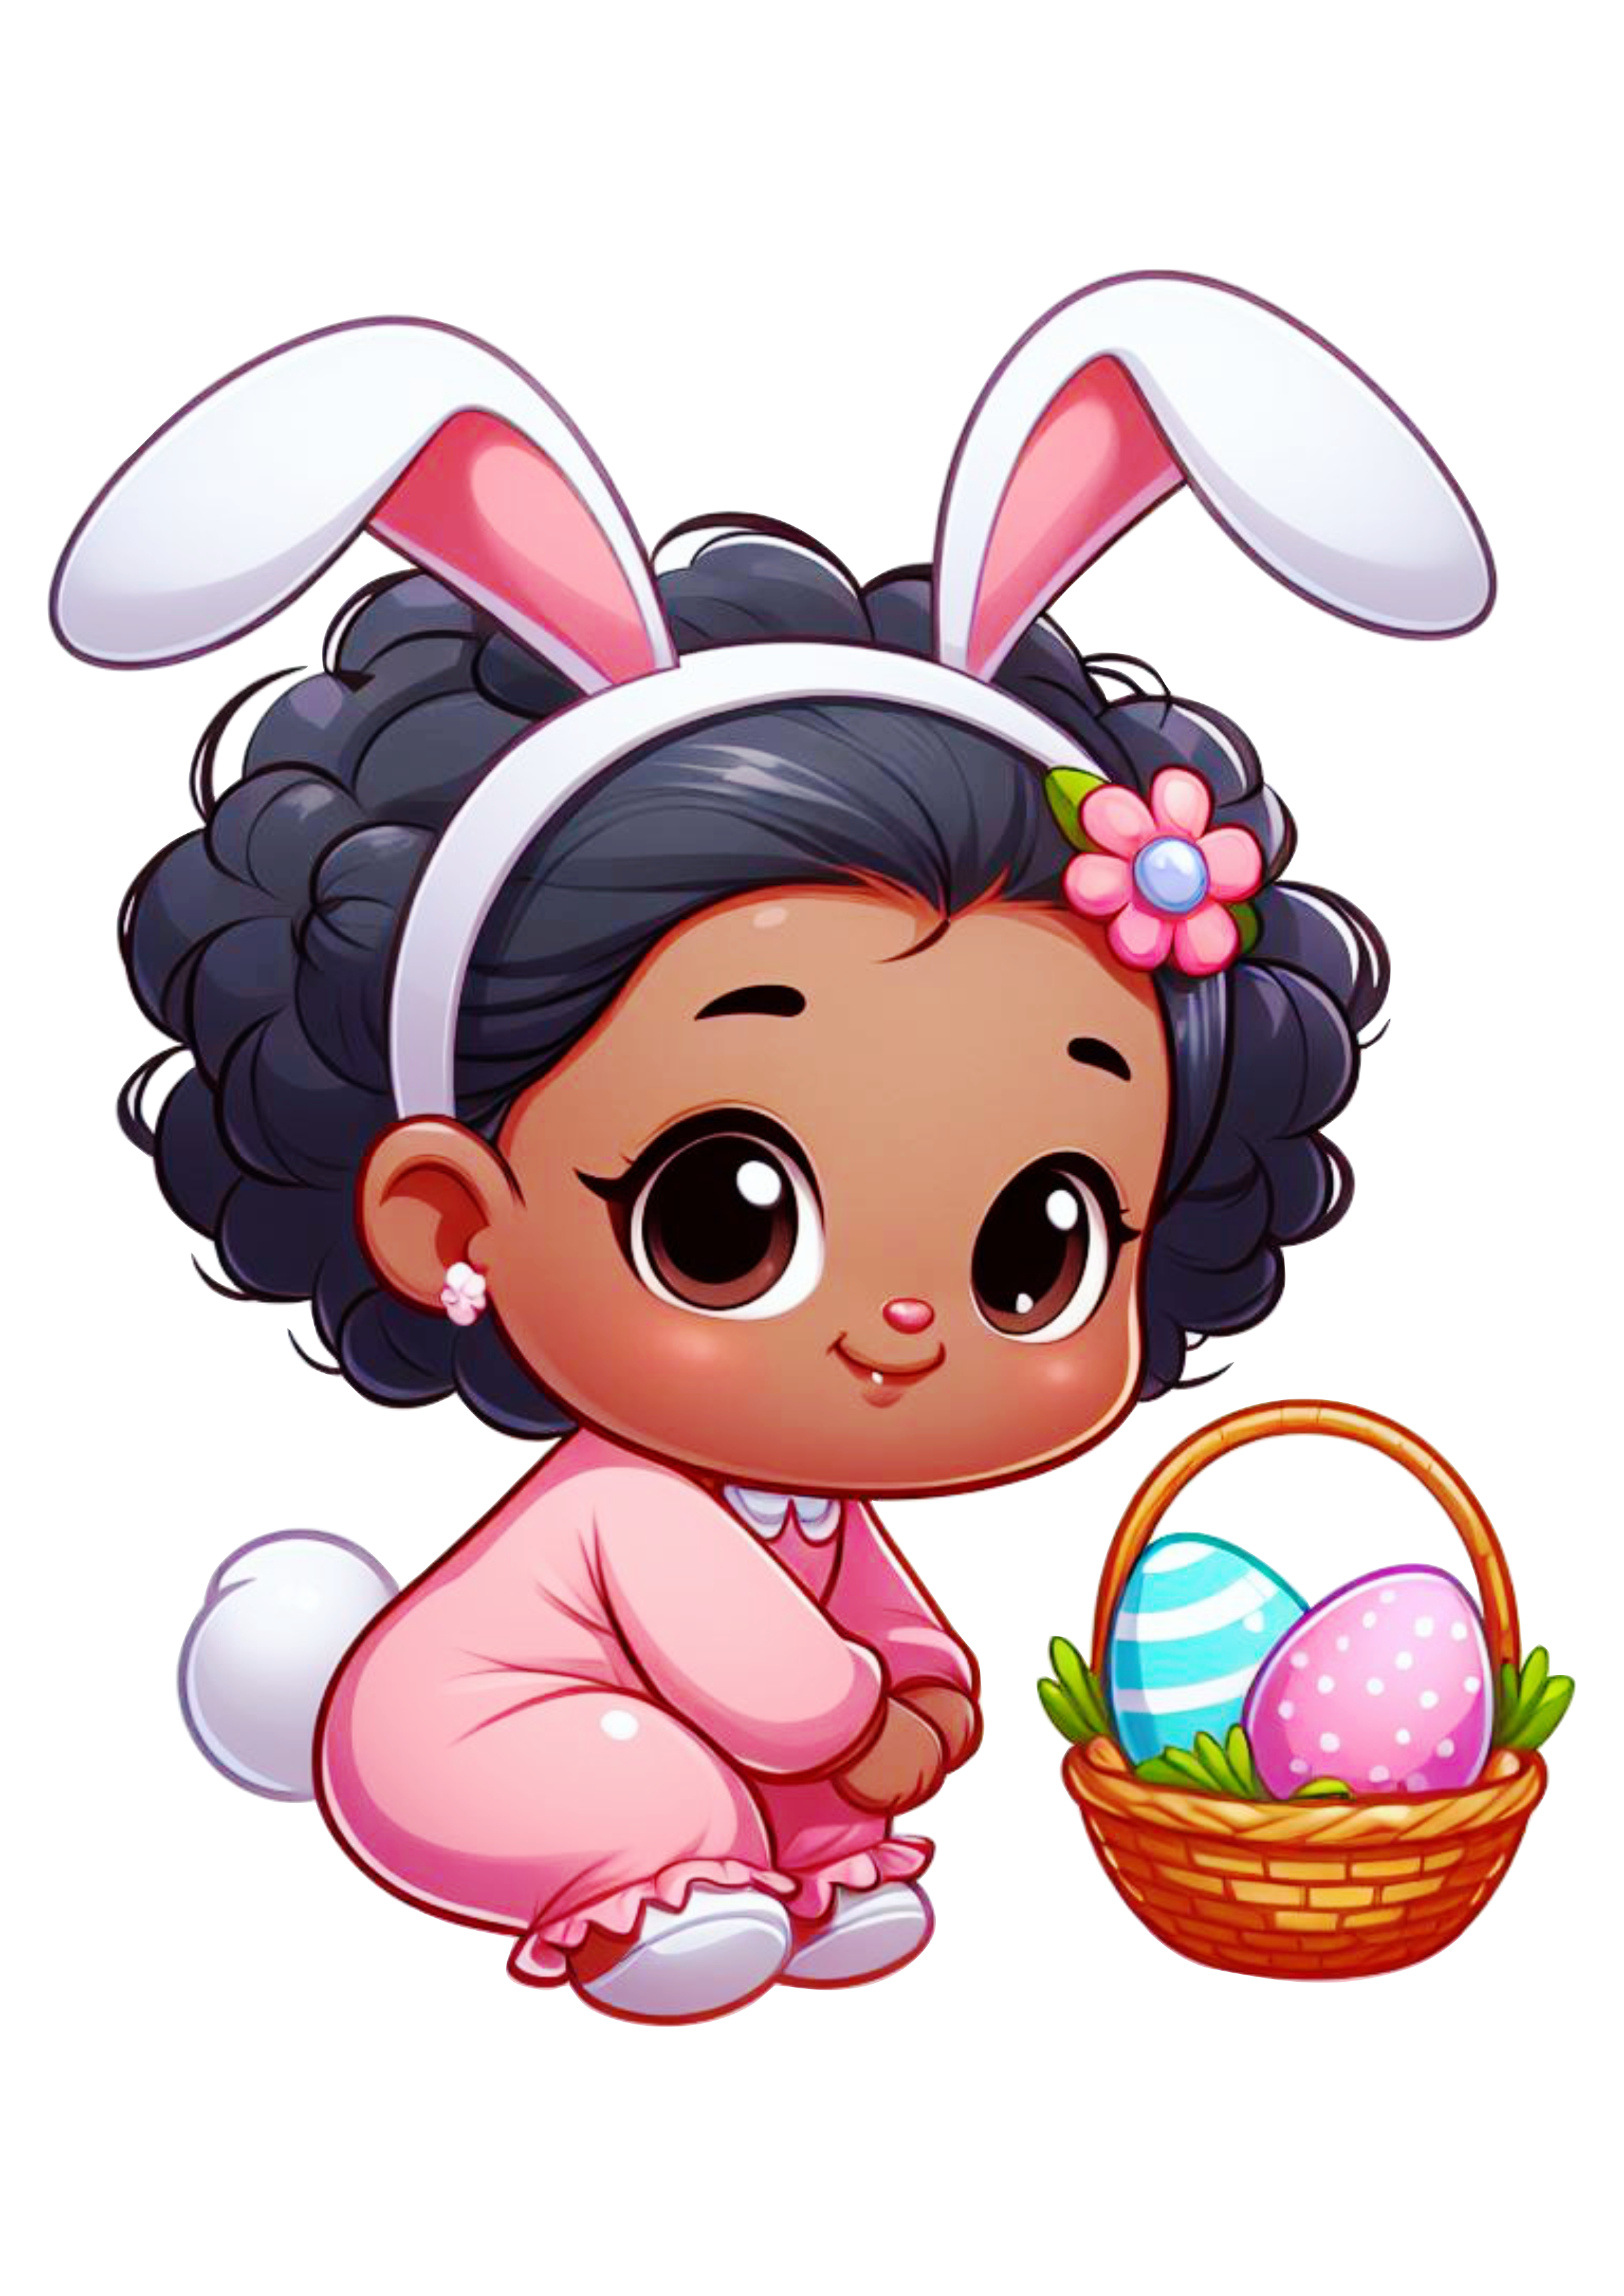 Páscoa menina moreninha com fantasia de coelho desenho infantil cesta de ovos de chocolate png